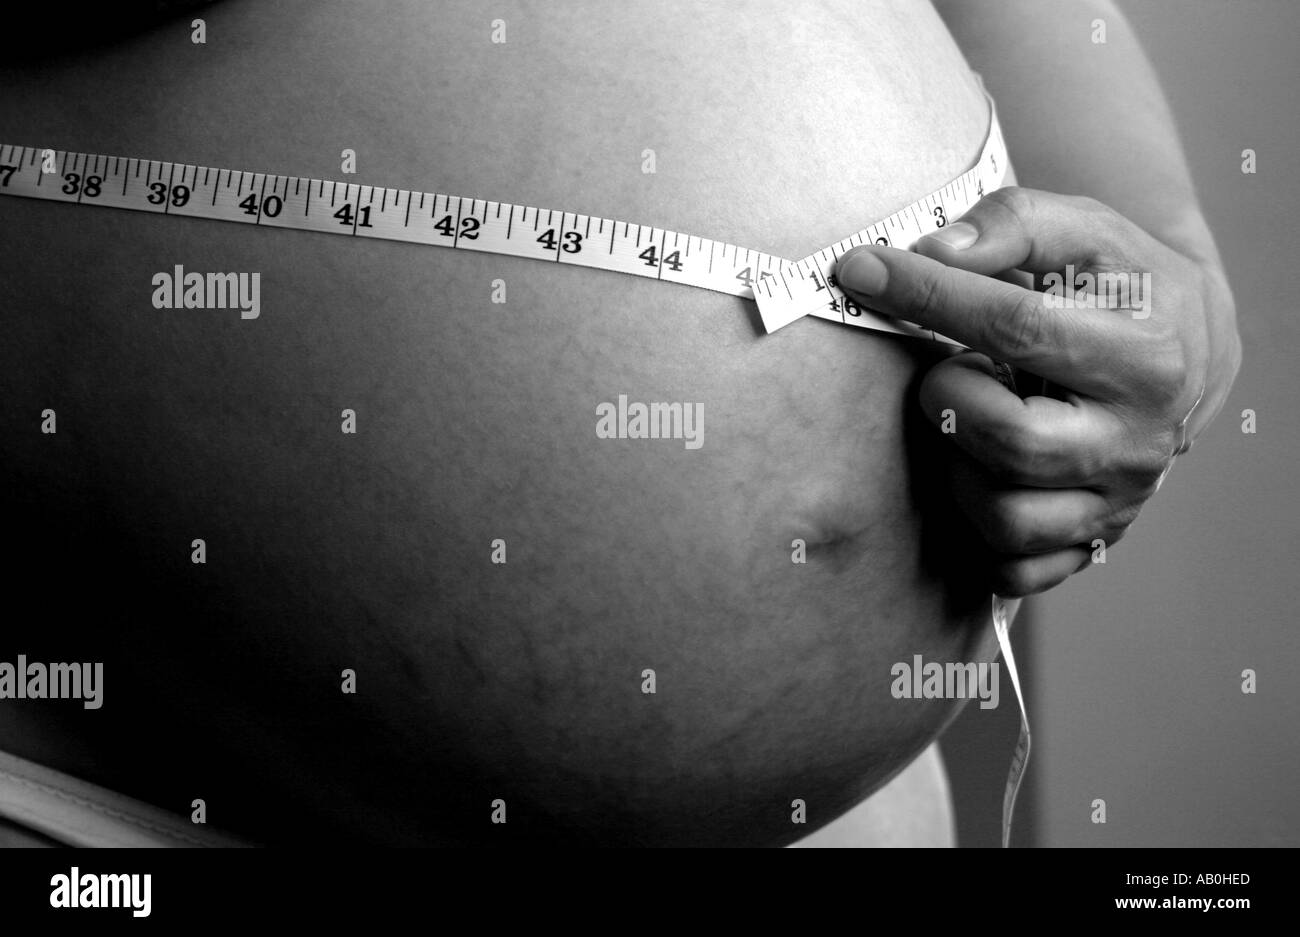 35 Semanas De Embarazo Imágenes De Stock En Blanco Y Negro Alamy